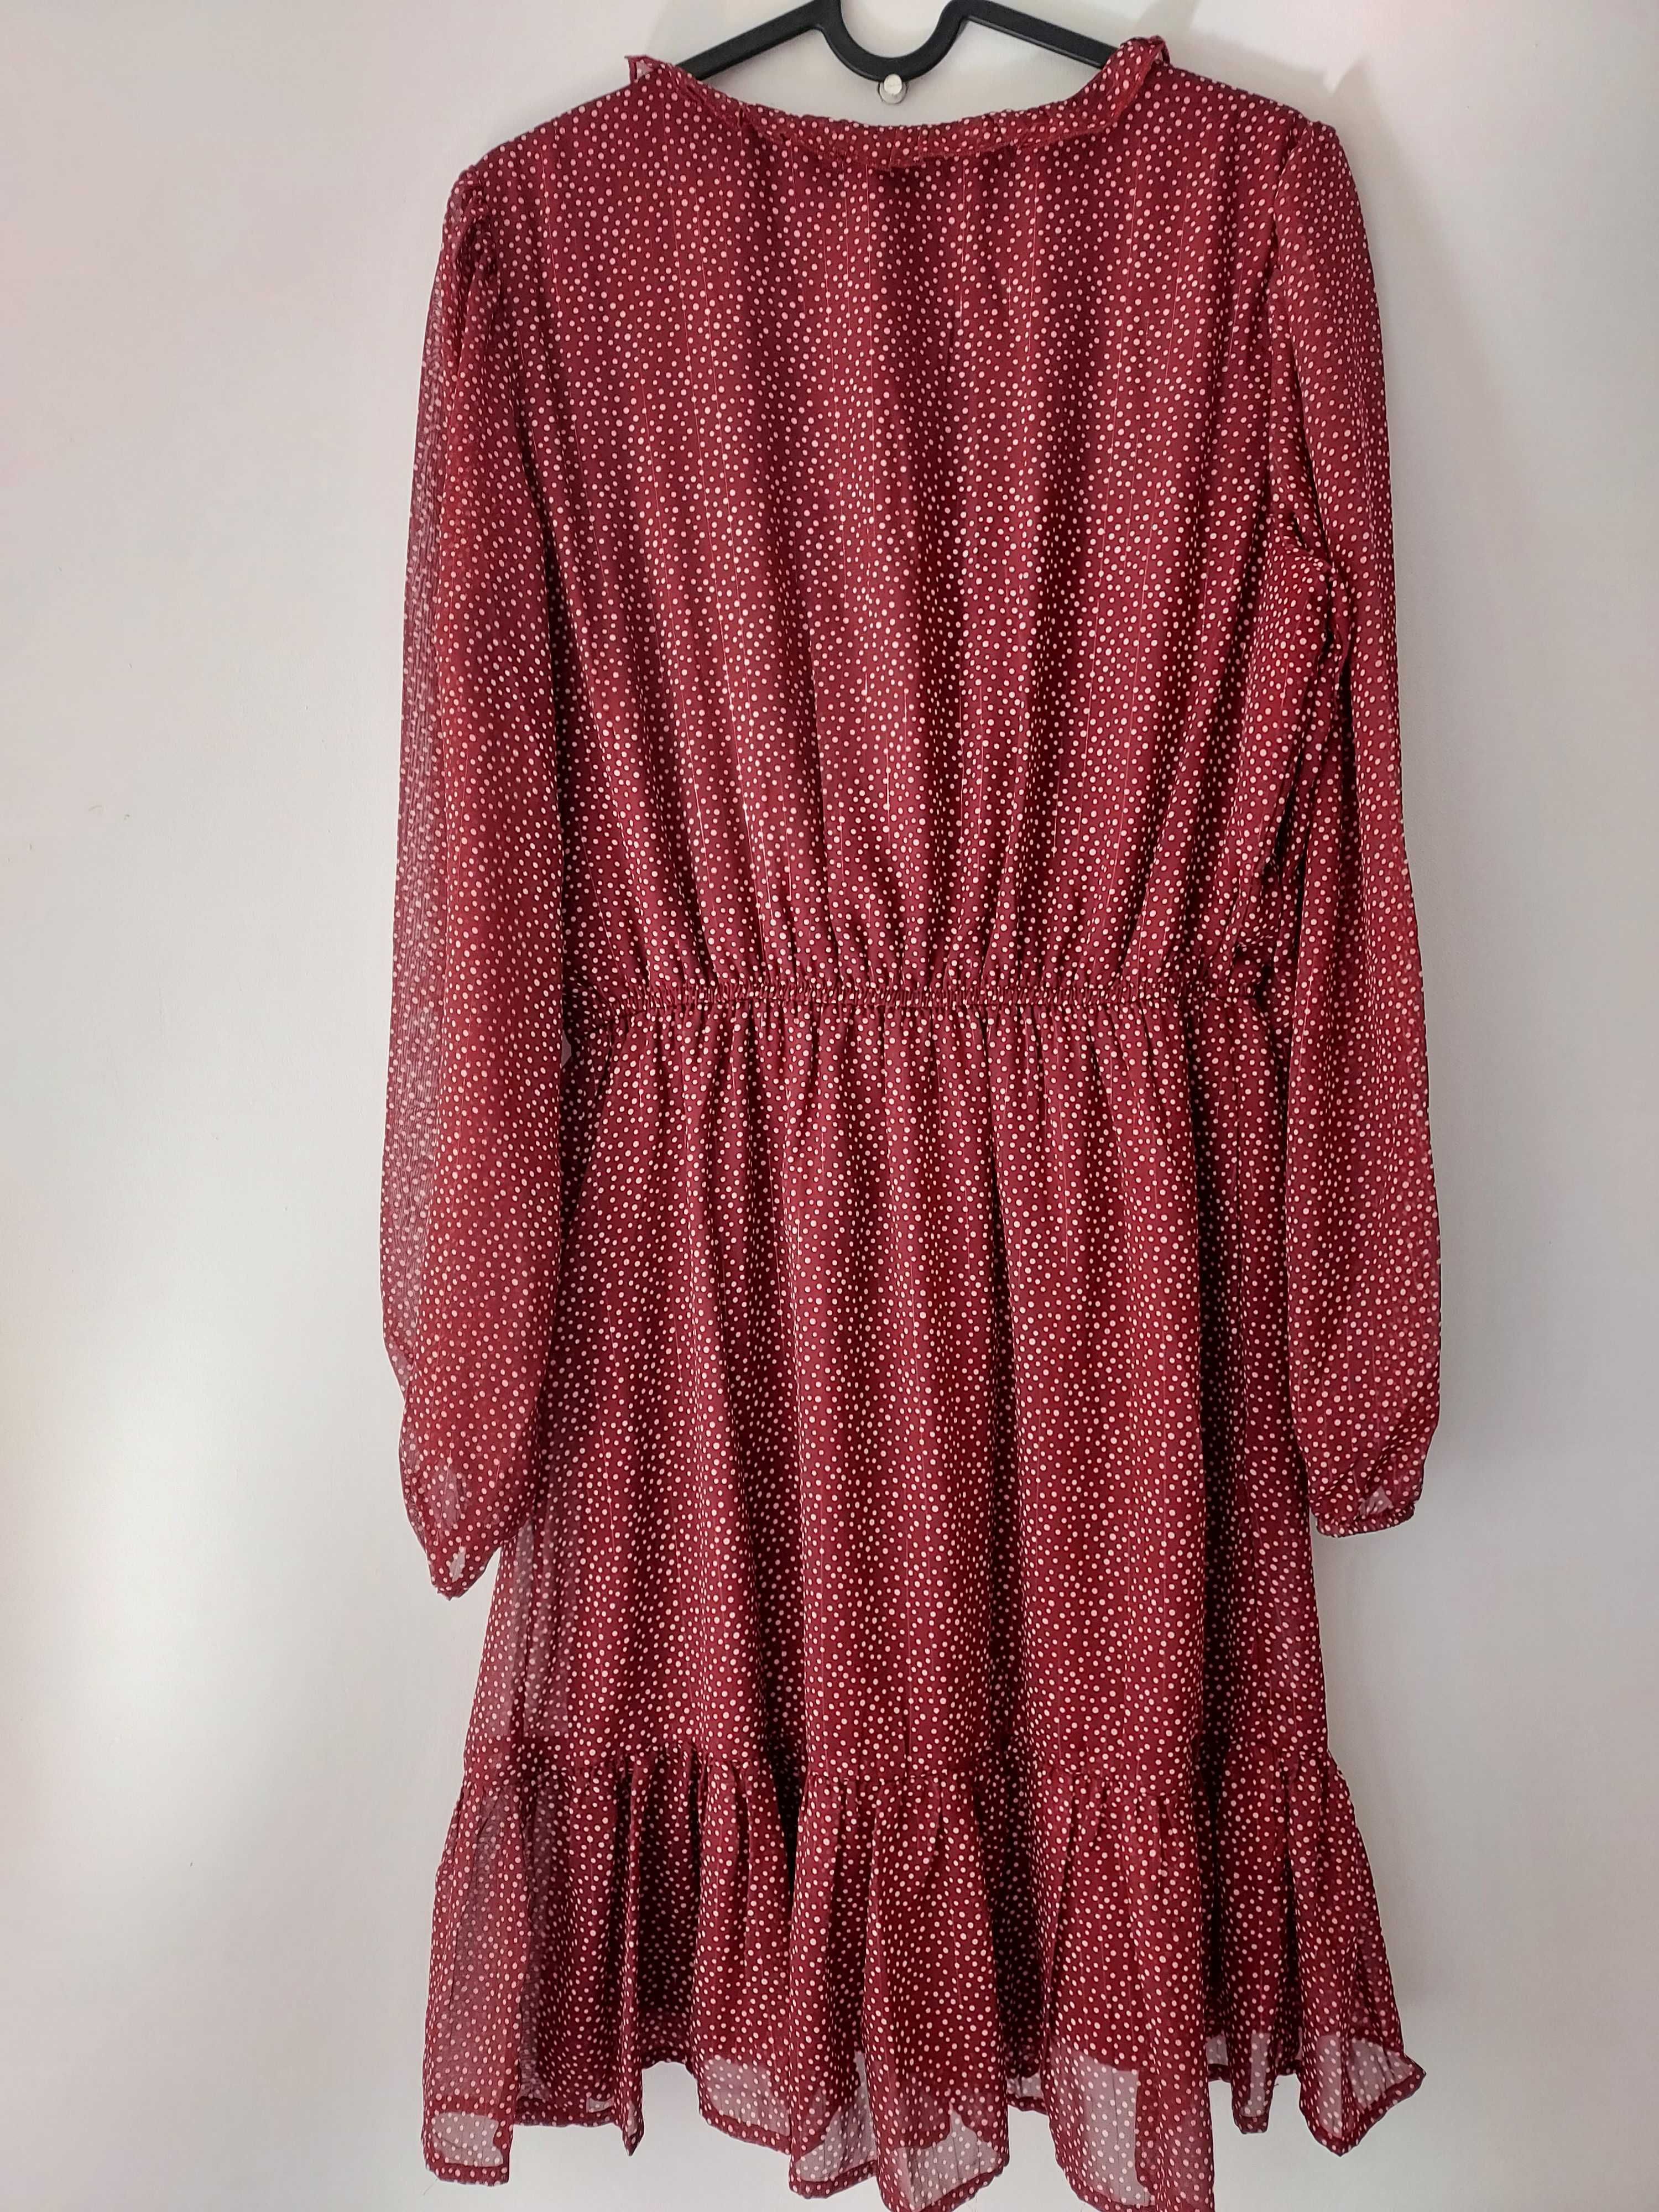 Romantyczna czerwona sukienka midi w kropki